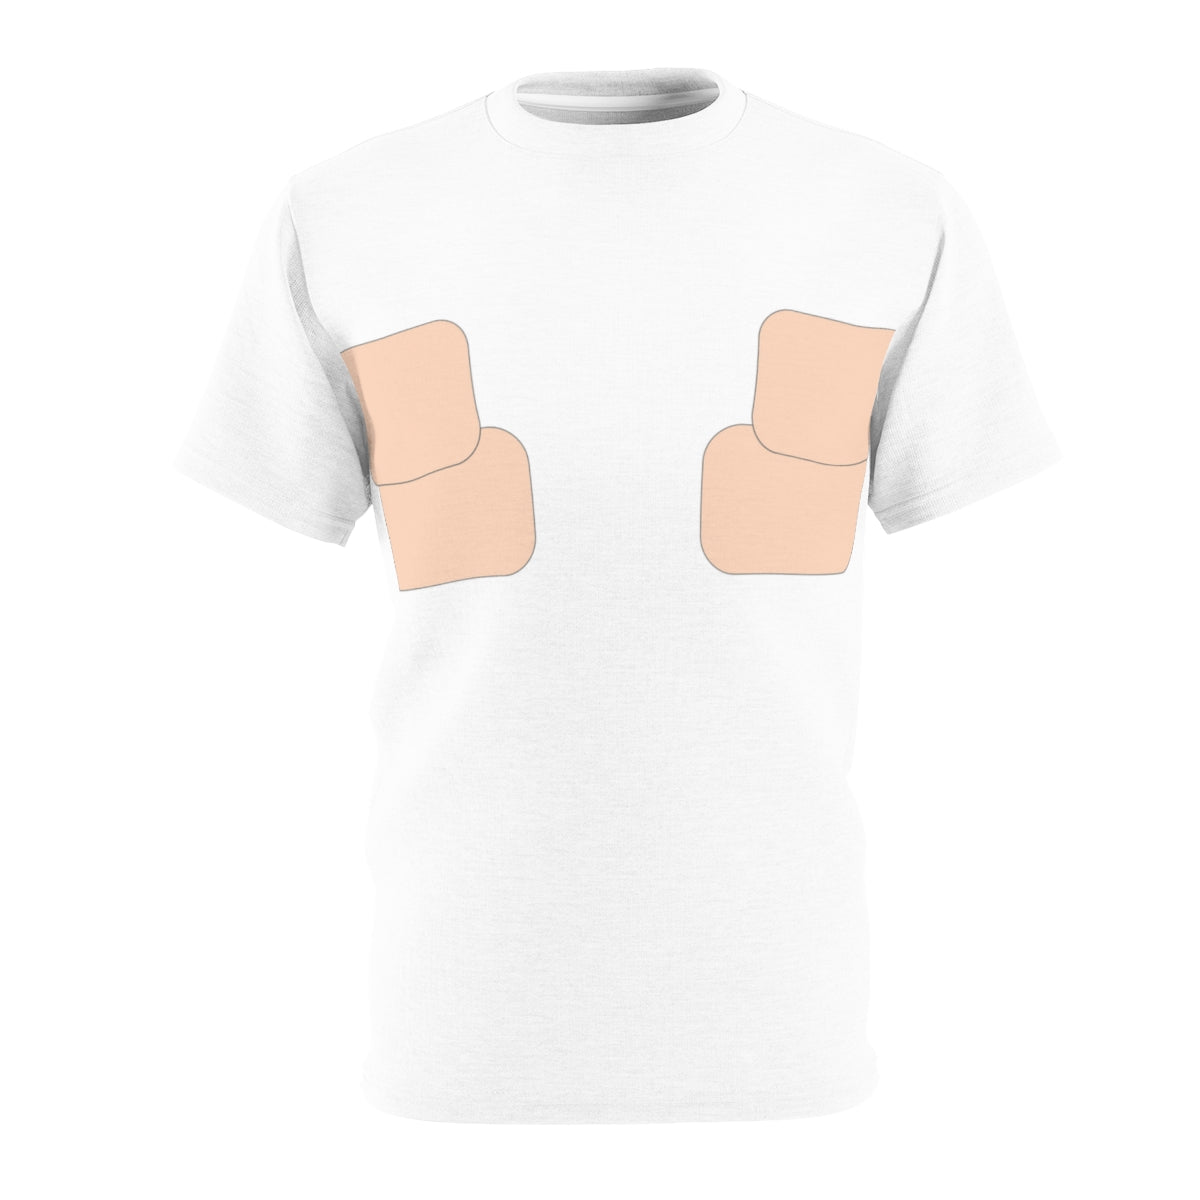 Normalizar la camiseta con cinta en el pecho | Tono de piel 001 - 2 tiras 